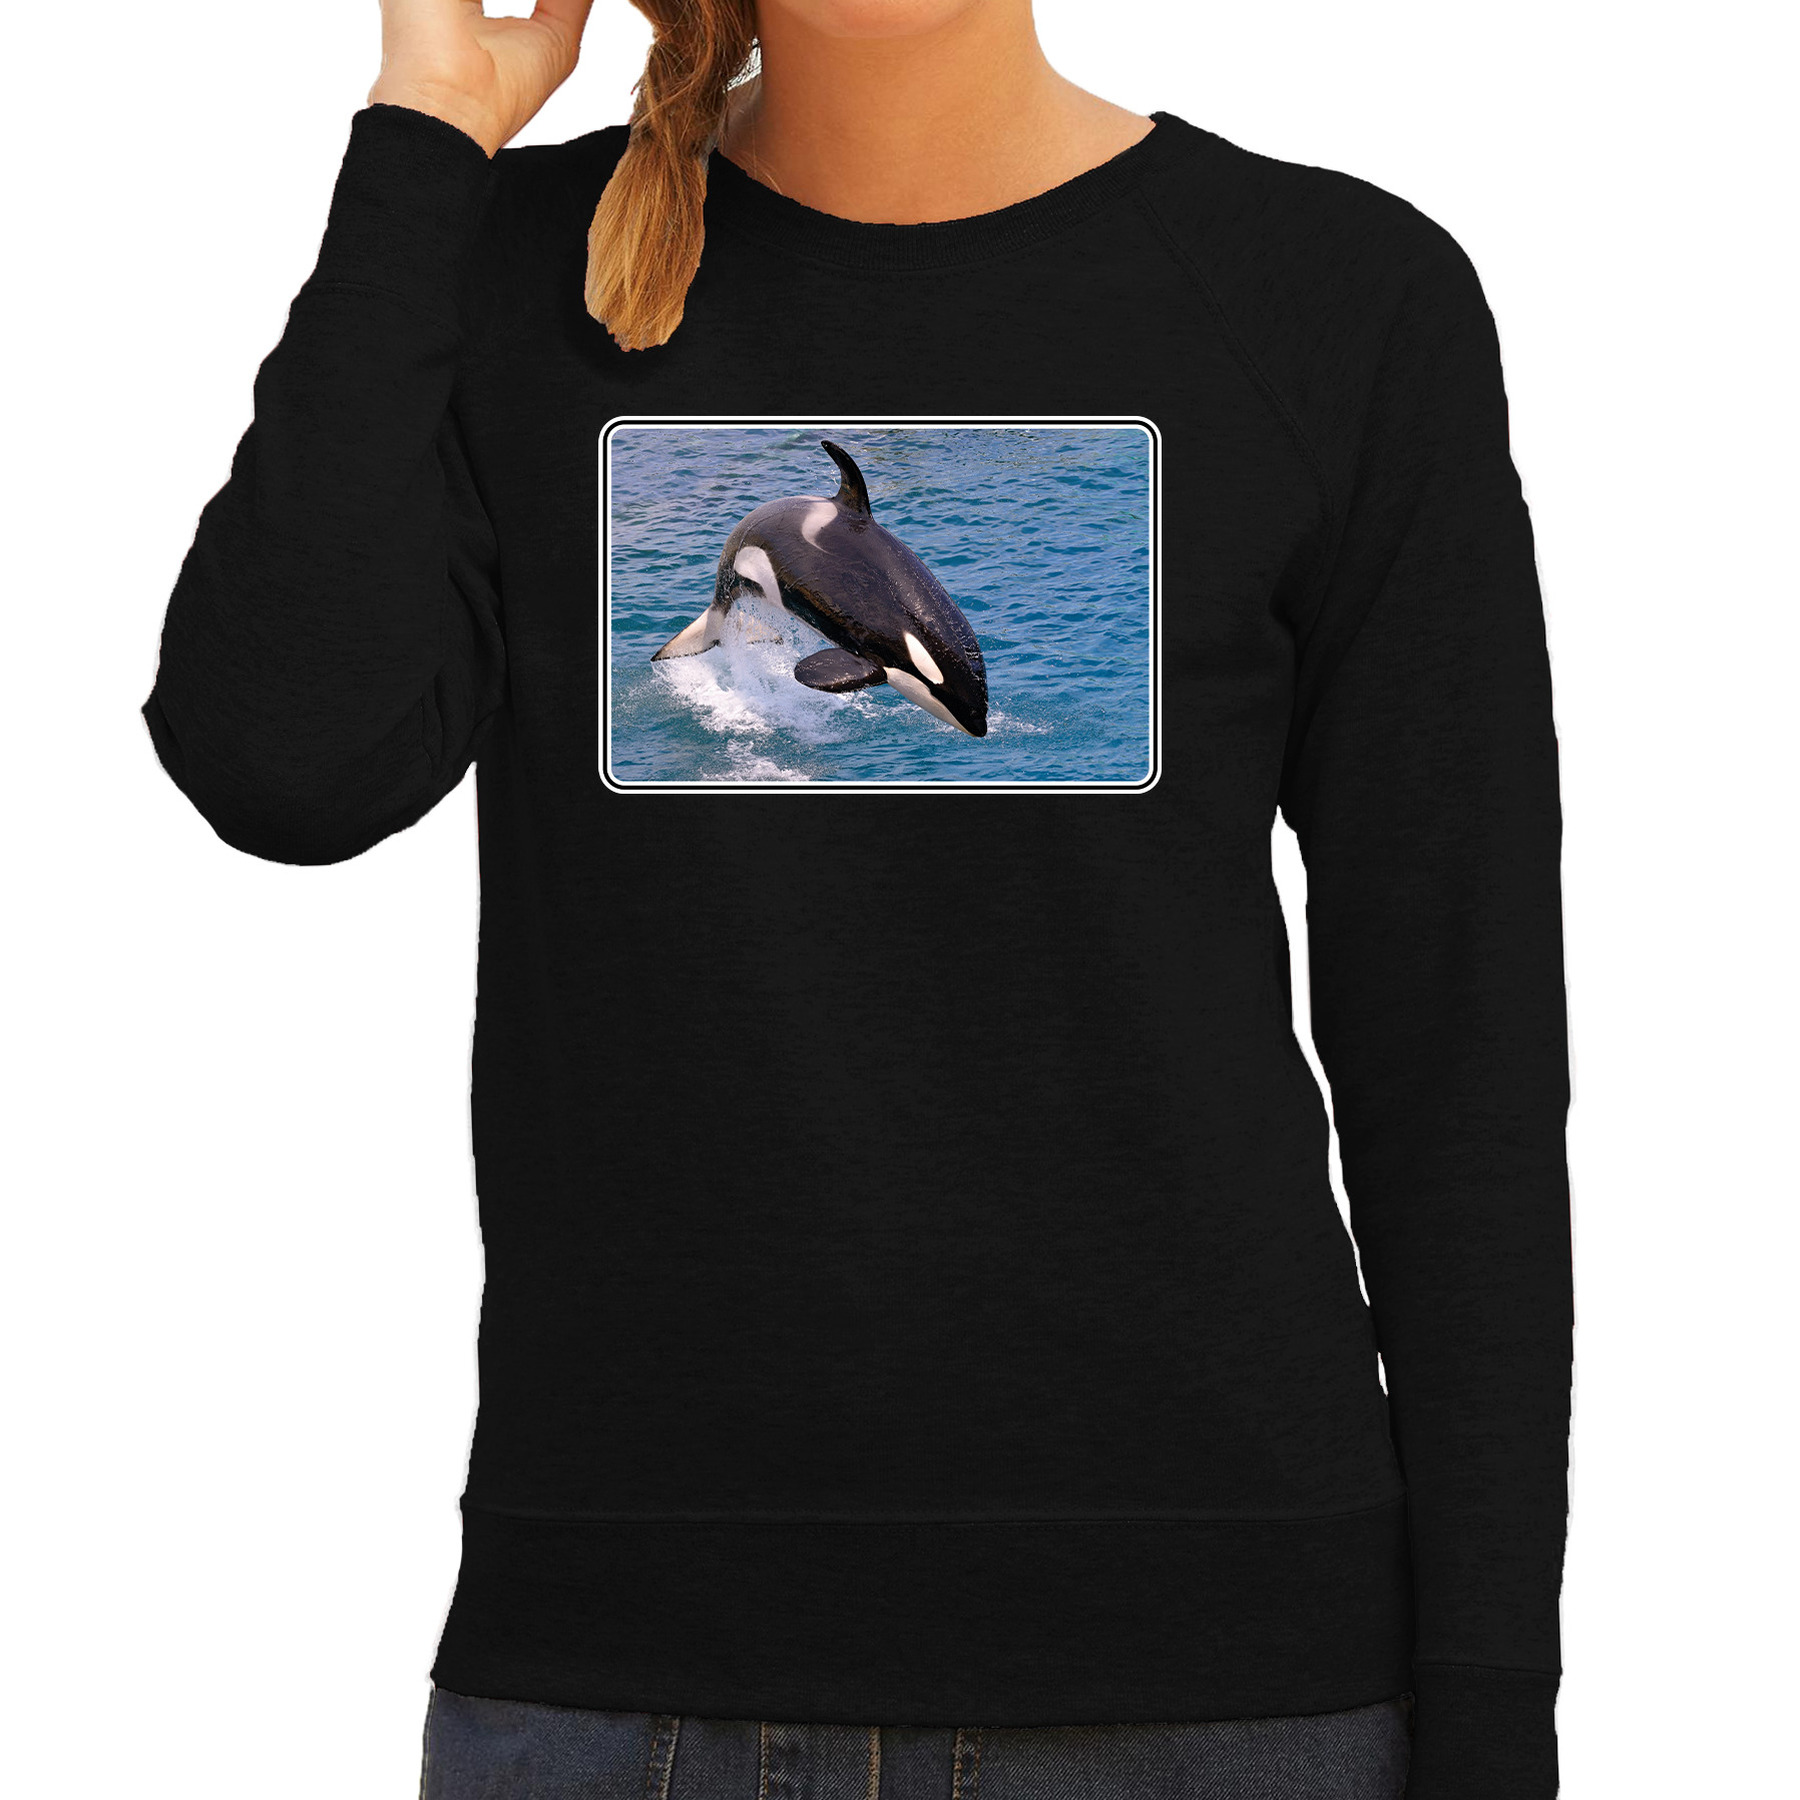 Dieren sweater / trui met orka walvissen foto zwart voor dames